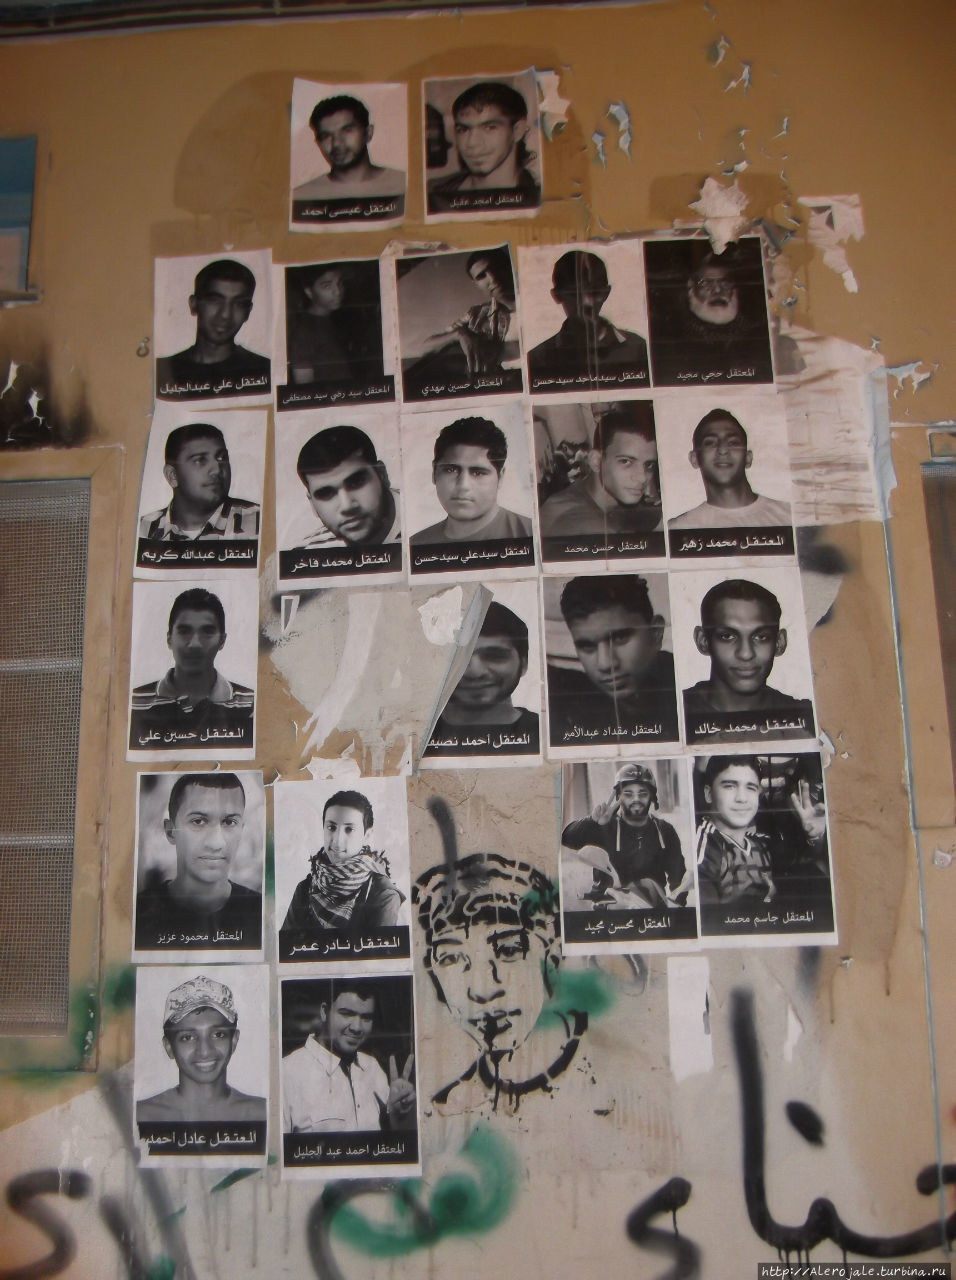 Много жертв среди молодых и эти листовки часто встречались в центре Манамы Манама, Бахрейн